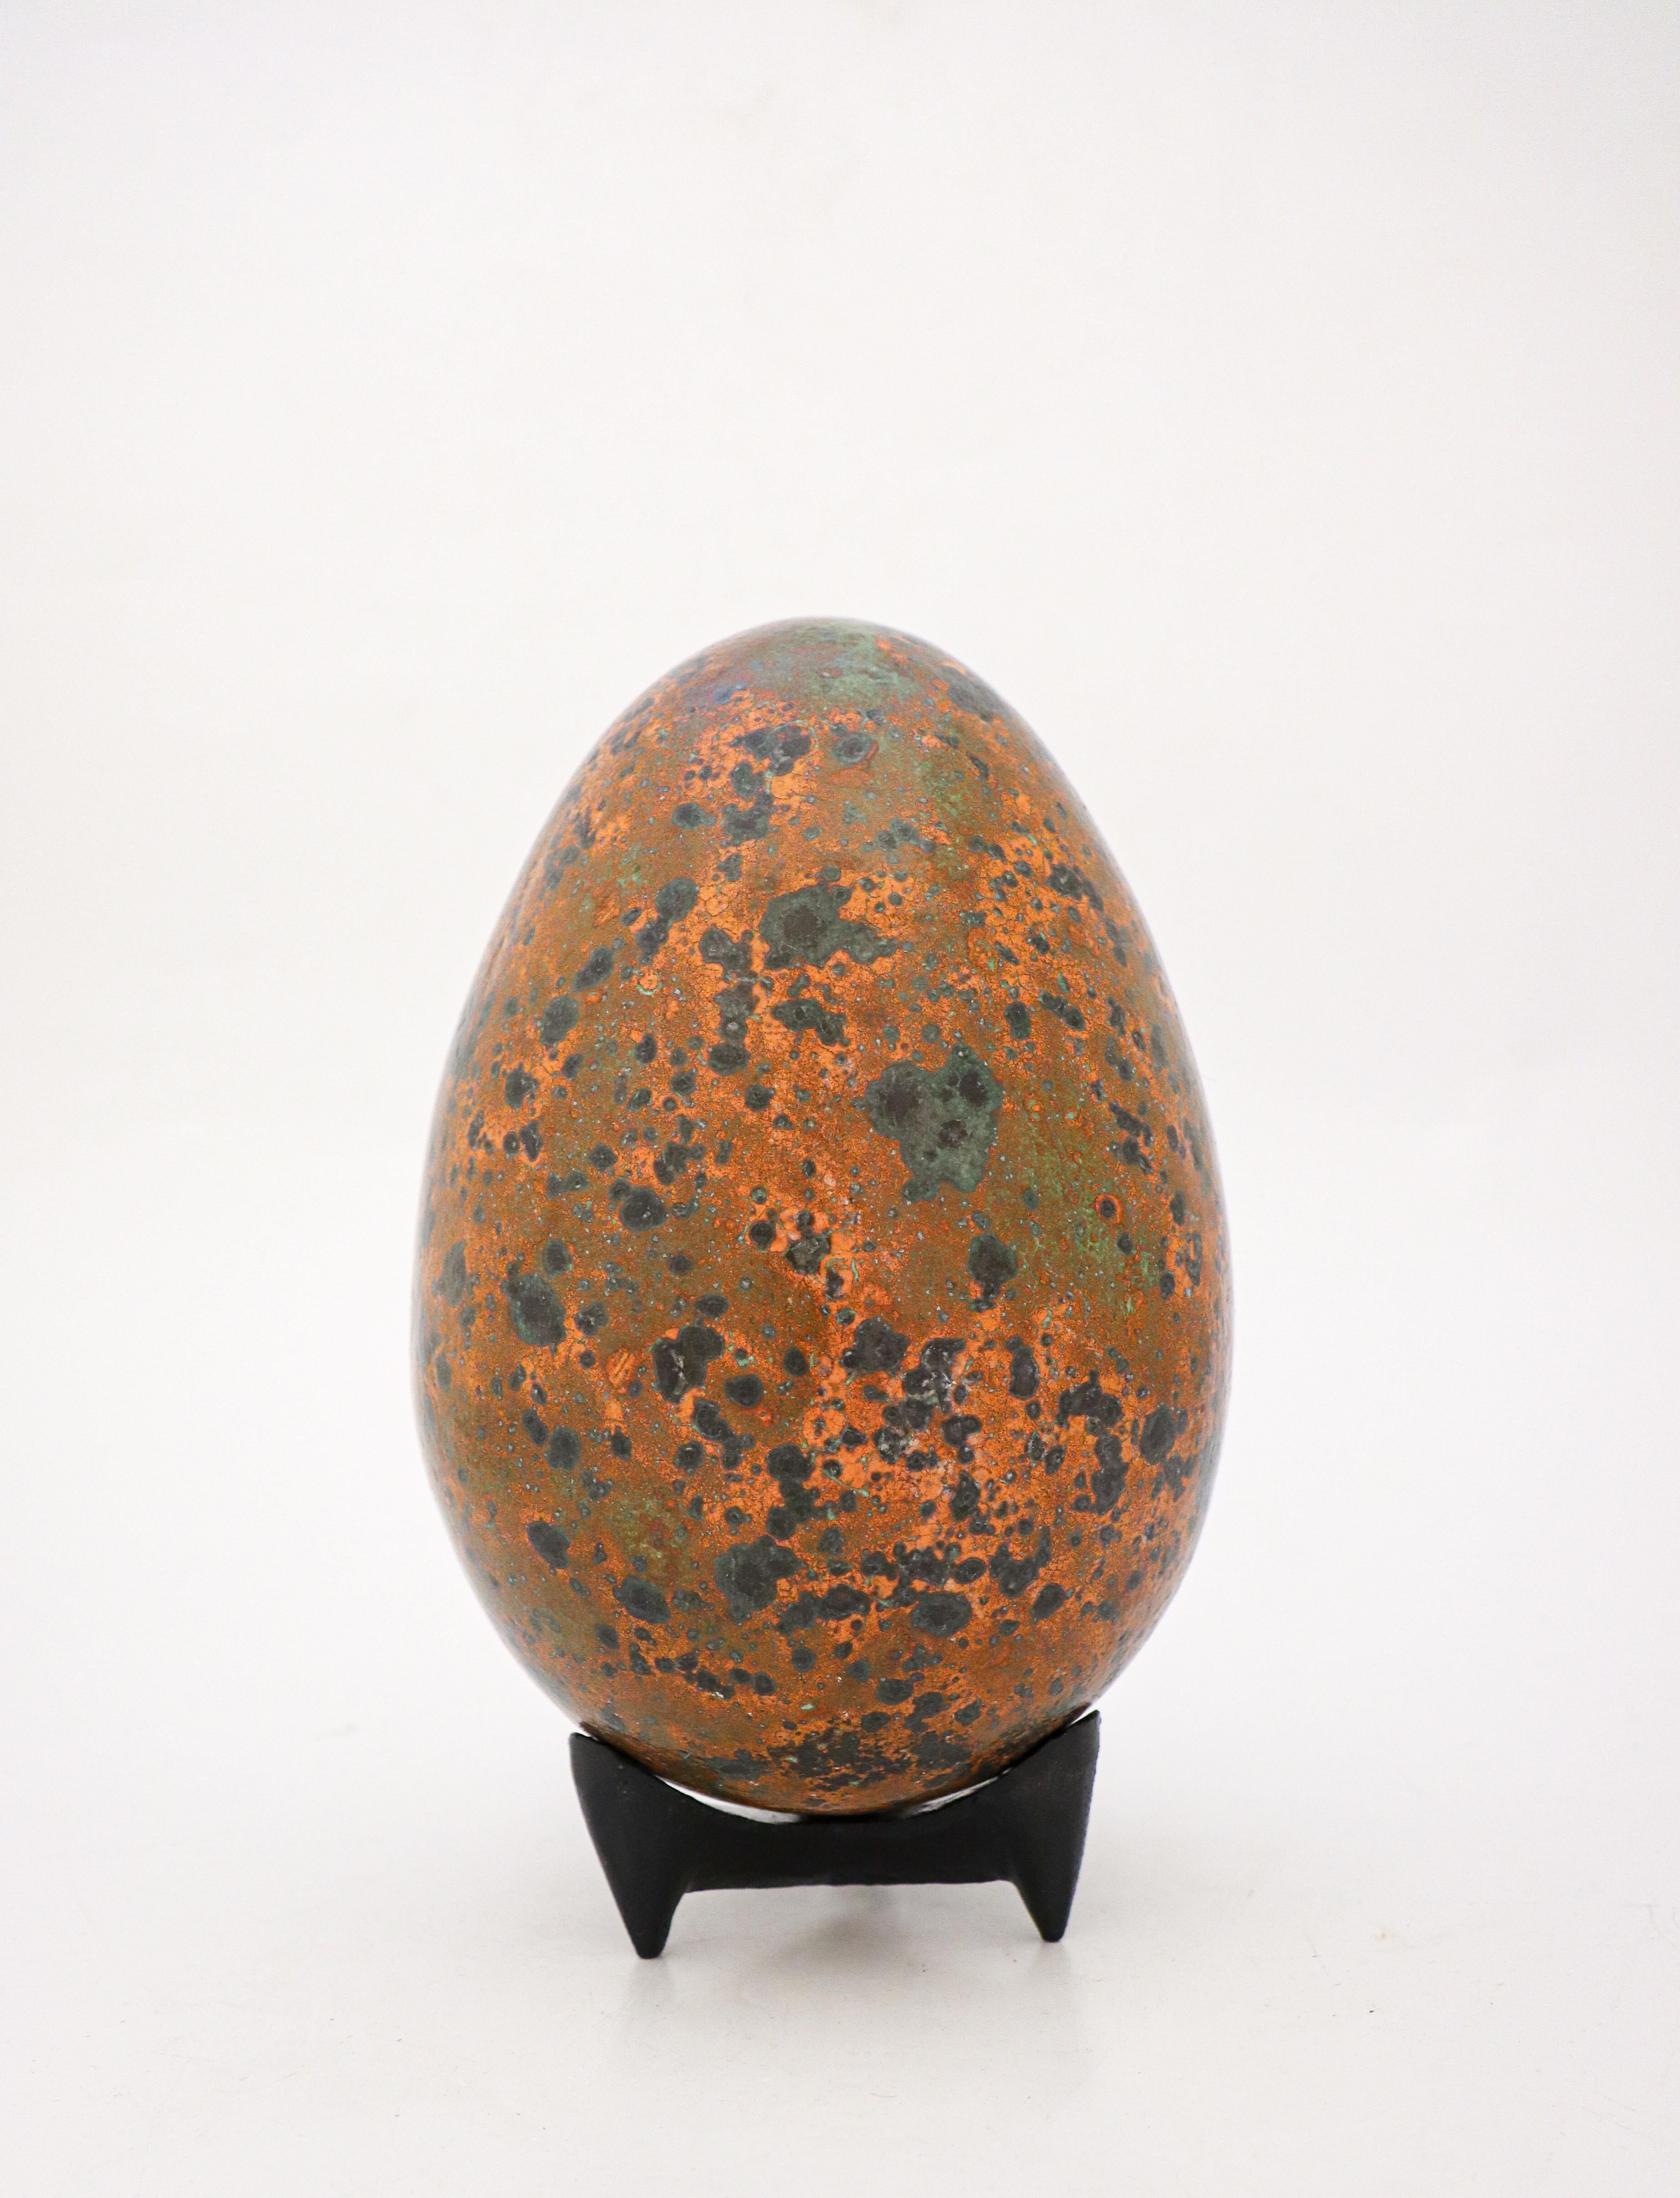 Das Ei wurde von dem schwedischen Keramiker Hans Hedberg entworfen, der in Biot, Frankreich, lebte und arbeitete. Dieses Ei ist 25 cm (10